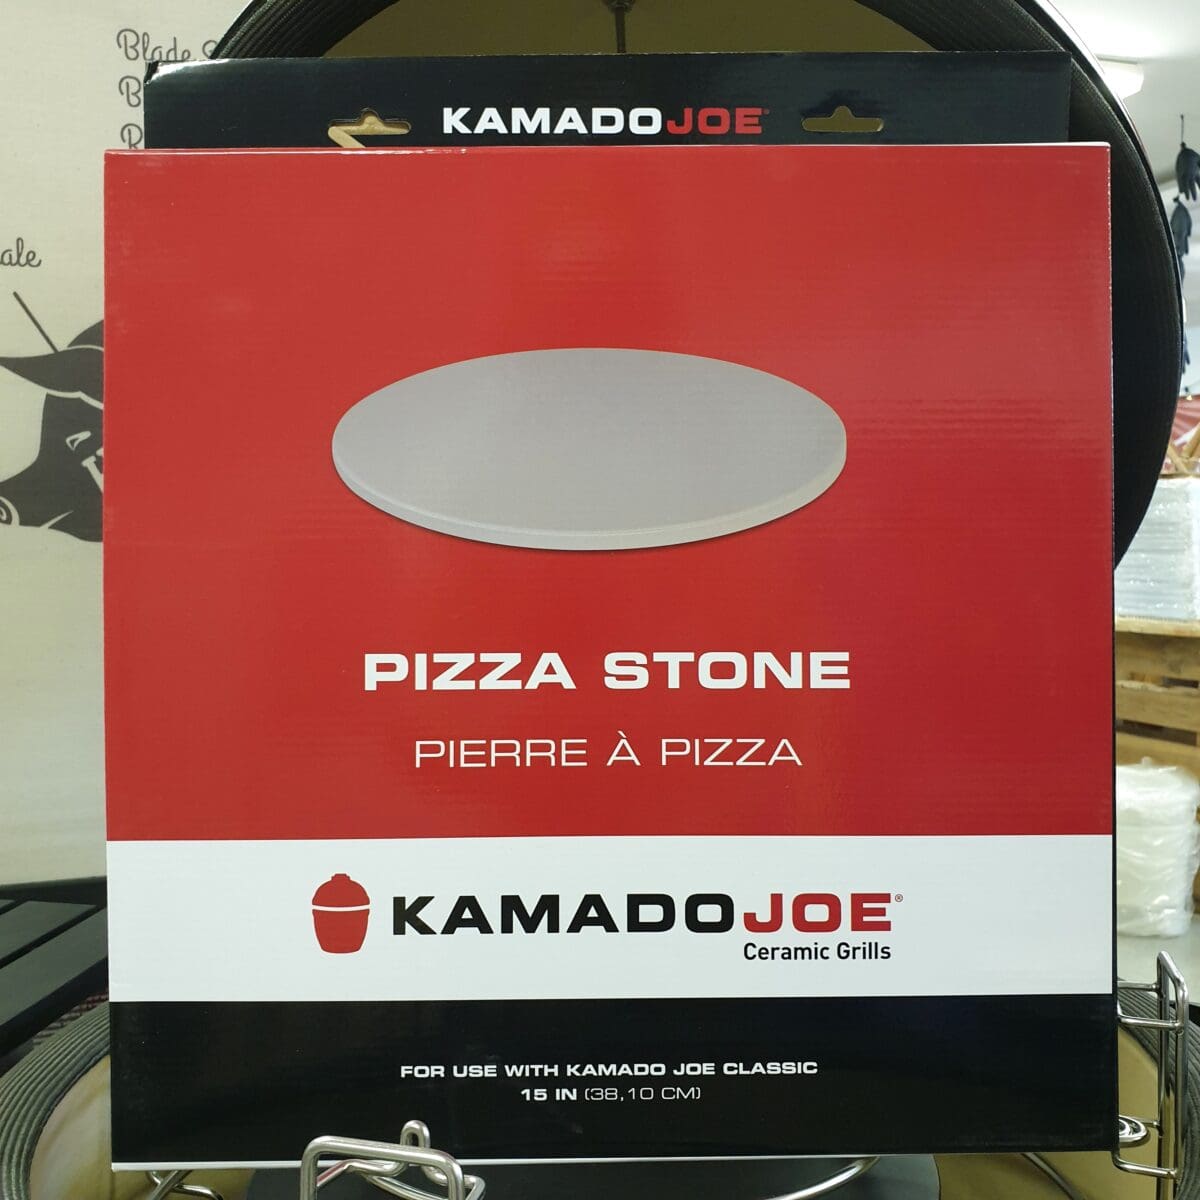 Pizzasten - Kamado Joe - 38cm - passar alla grillar och Kamados Pizza på pizzasten är hemligheten till en "köp-pizza-känsla" där degen är krispig och genombakad utan att blivit som ett knäckebröd. Denna pizzasten är gjord av högkvalitativ värmetålig keramik. Passar både i grill och ugn.  Kamado Joe pizzasten har en diameter på 38 cm, vilket är en alldeles lagom storlek på en pizzza - större och det blir svårt att göra annat än Calzone... Många är vi som på början av 2000 talet letade efter det perfekta receptet på pizzadeg i tron att detta var skillnaden som gjorde skillnaden - vi hade FEL. Hemligheten till en bra bakad pizza ligger istället i att degen bakas under ifrån, från ett redan hett underlag - alltså en upphettad pizzasten. Lagom temperatur i grillen (eller ugnen) är 250 till 300 grader. För många är det då grillen som gäller, då de flesta hushållsugnar stannar på runt 225grader. Tekniken är: varm upp stenen, kavla ut degen på ett bakplåtspapper, dressa din pizza med dina favoriter men börja alltid med tomatsåsen, därefter pizzaosten, sen är det valfritt. Lyft över pizzan på sitt papper, låt den landa på stenen och ganska snart kan du rycka bort pappret. Använd pizzaspade (artikel nr 31016) för att lyfta bort pizzan när osten bubblar. Diameter 38 cm